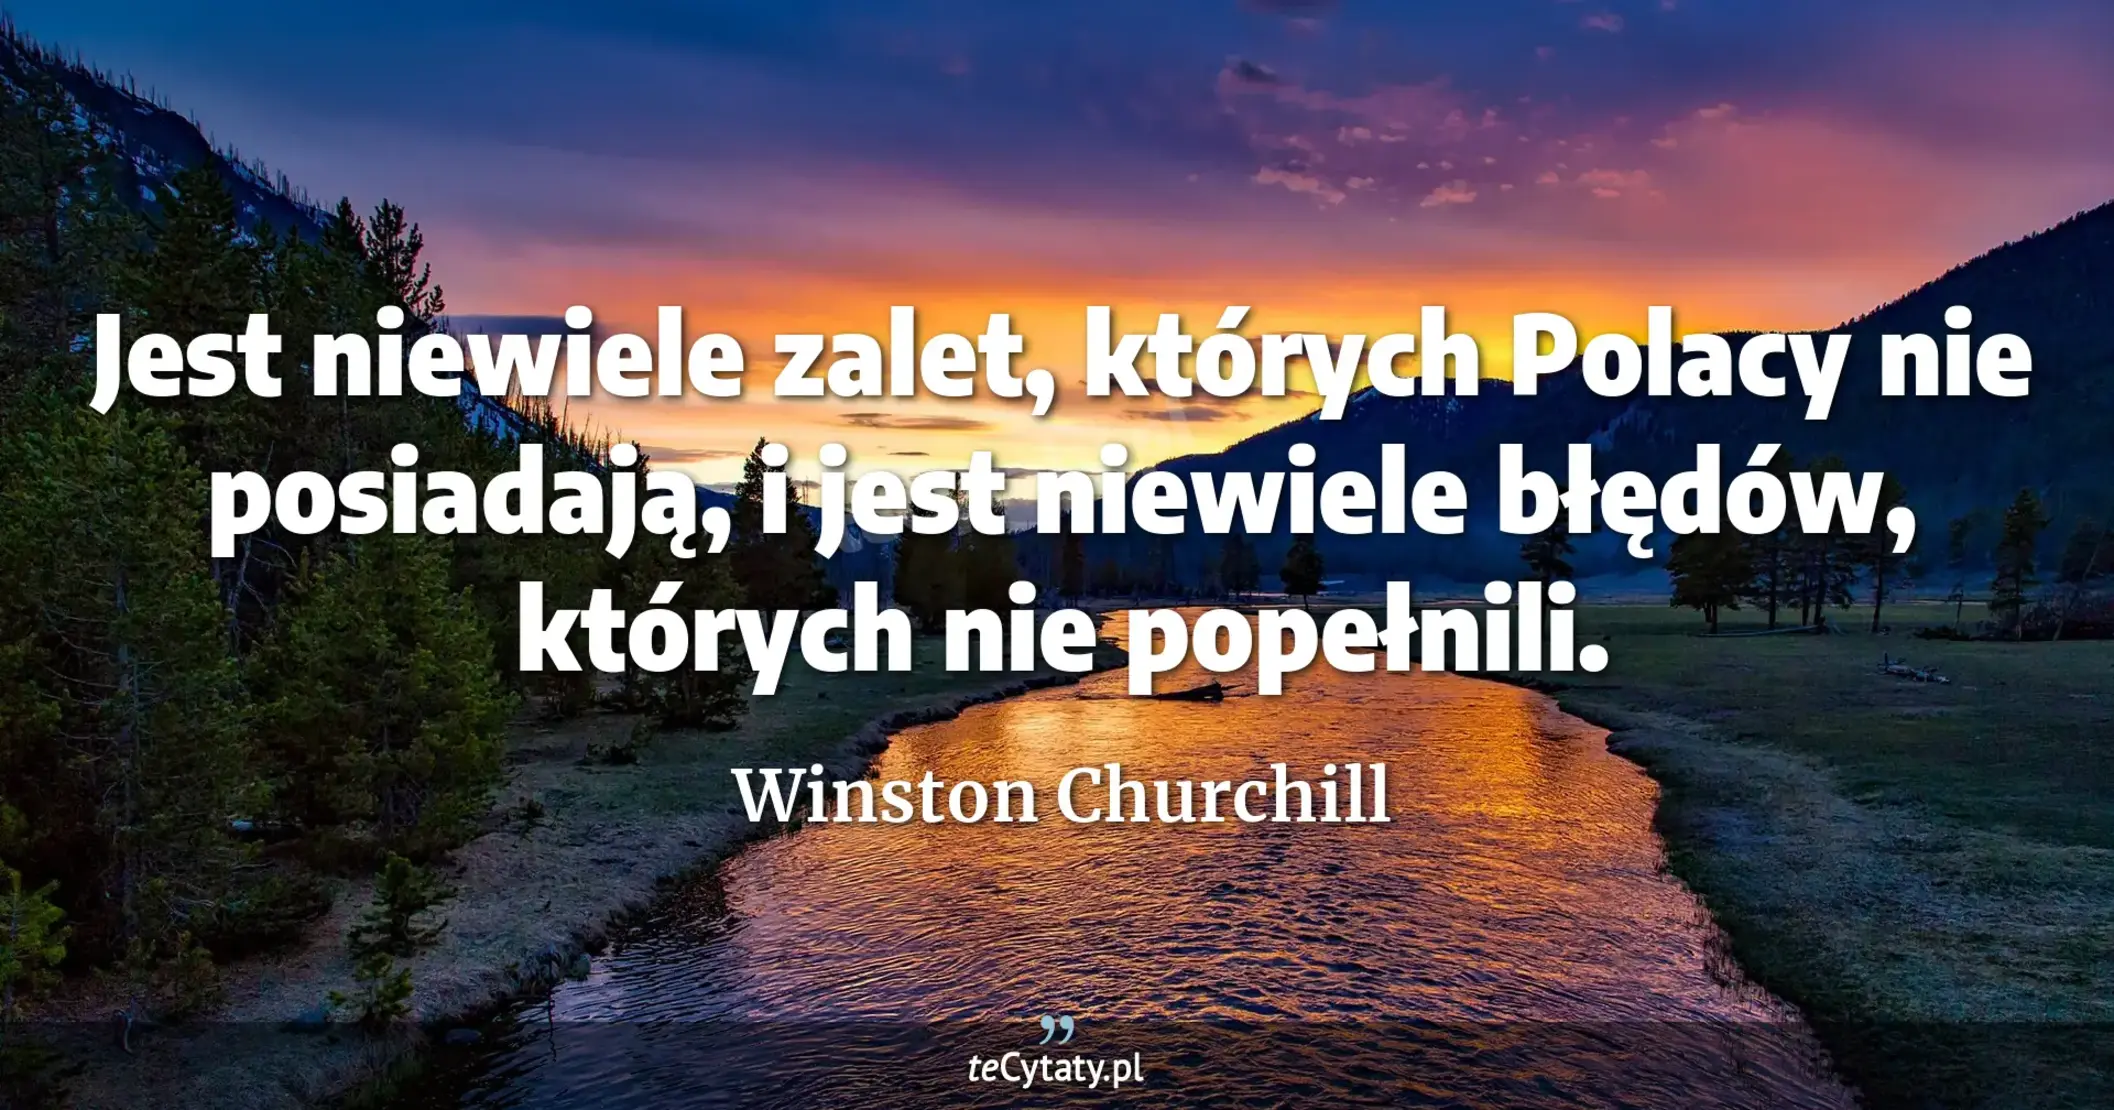 Jest niewiele zalet, których Polacy nie posiadają, i jest niewiele błędów, których nie popełnili. - Winston Churchill